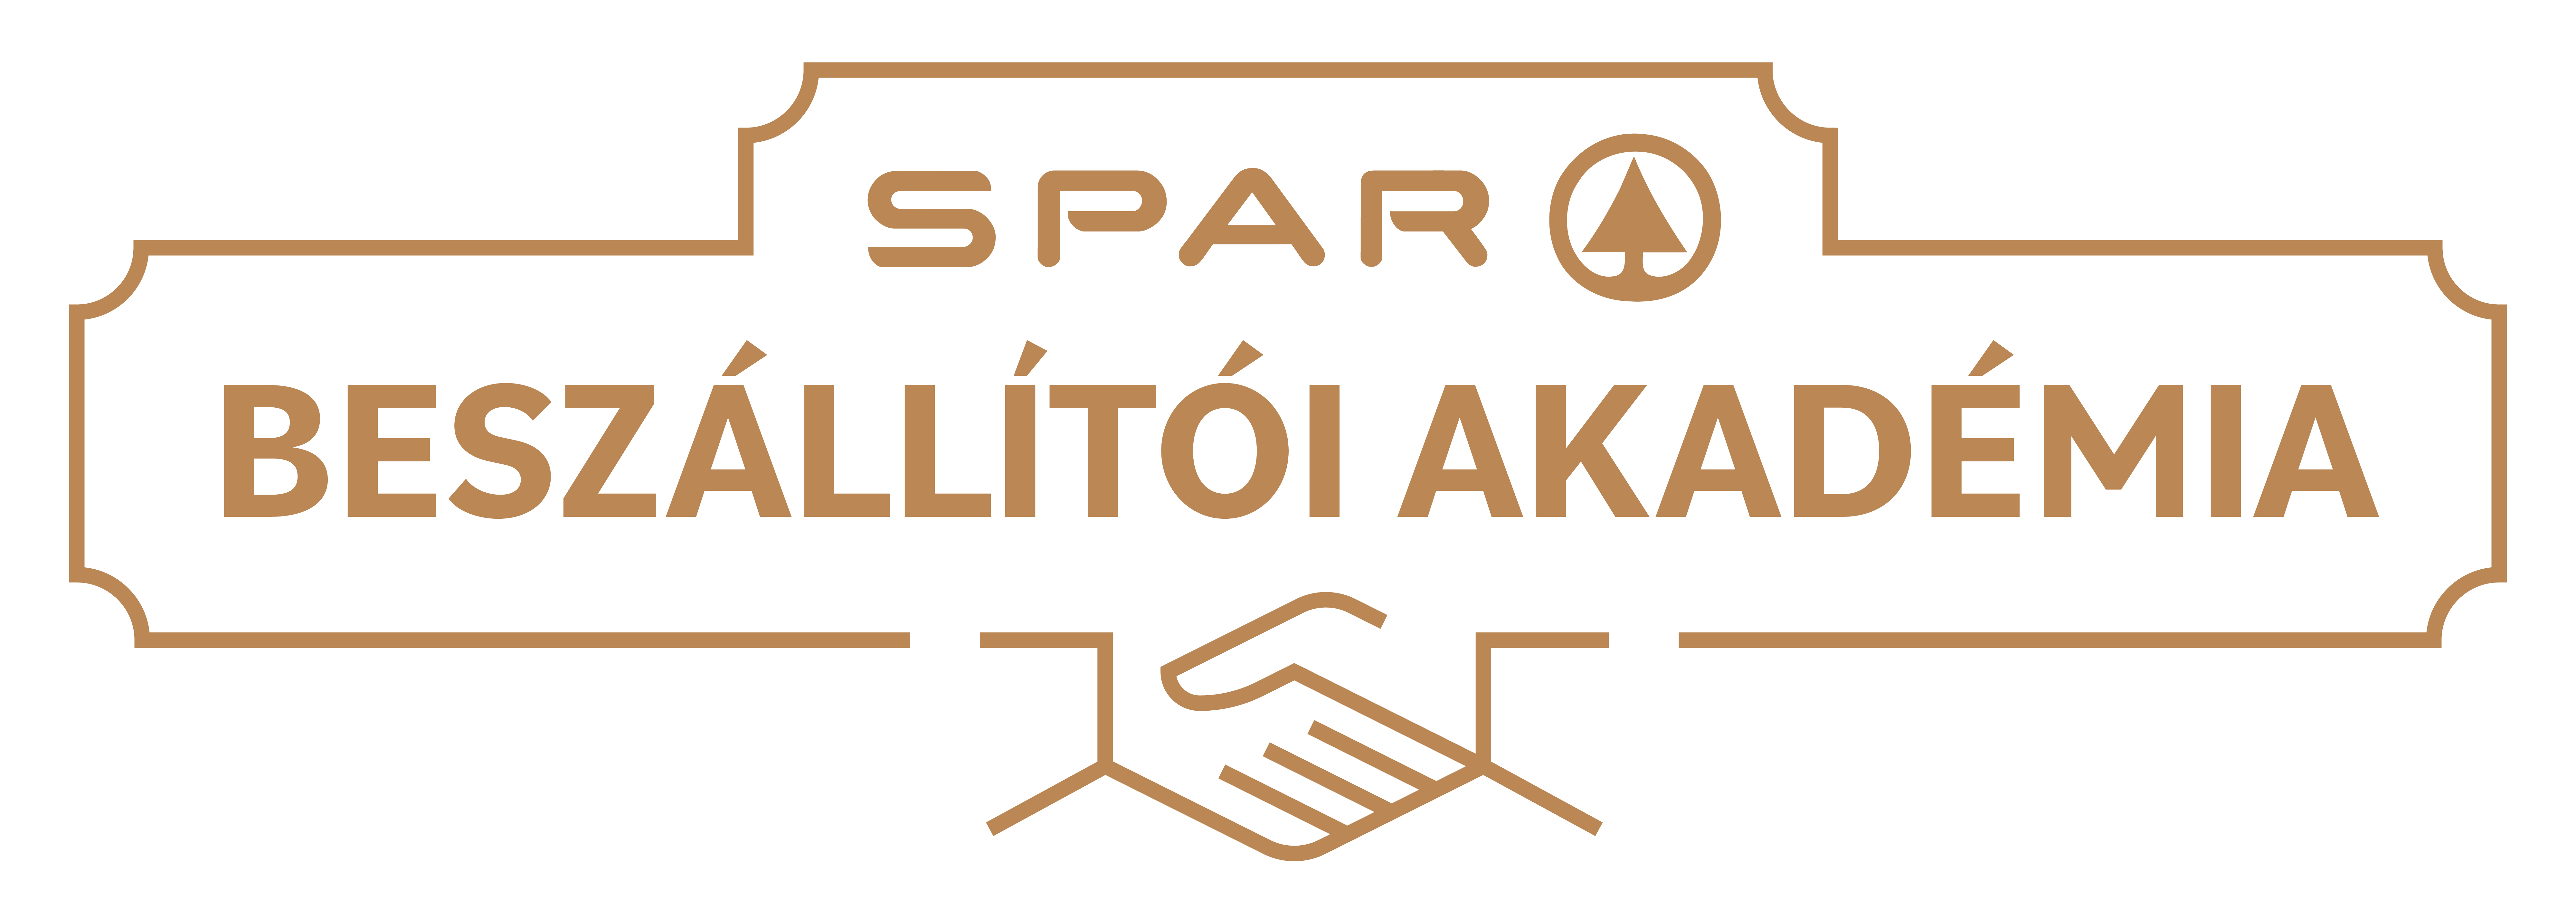 spar-beszallitoi-akademia-logo.jpg